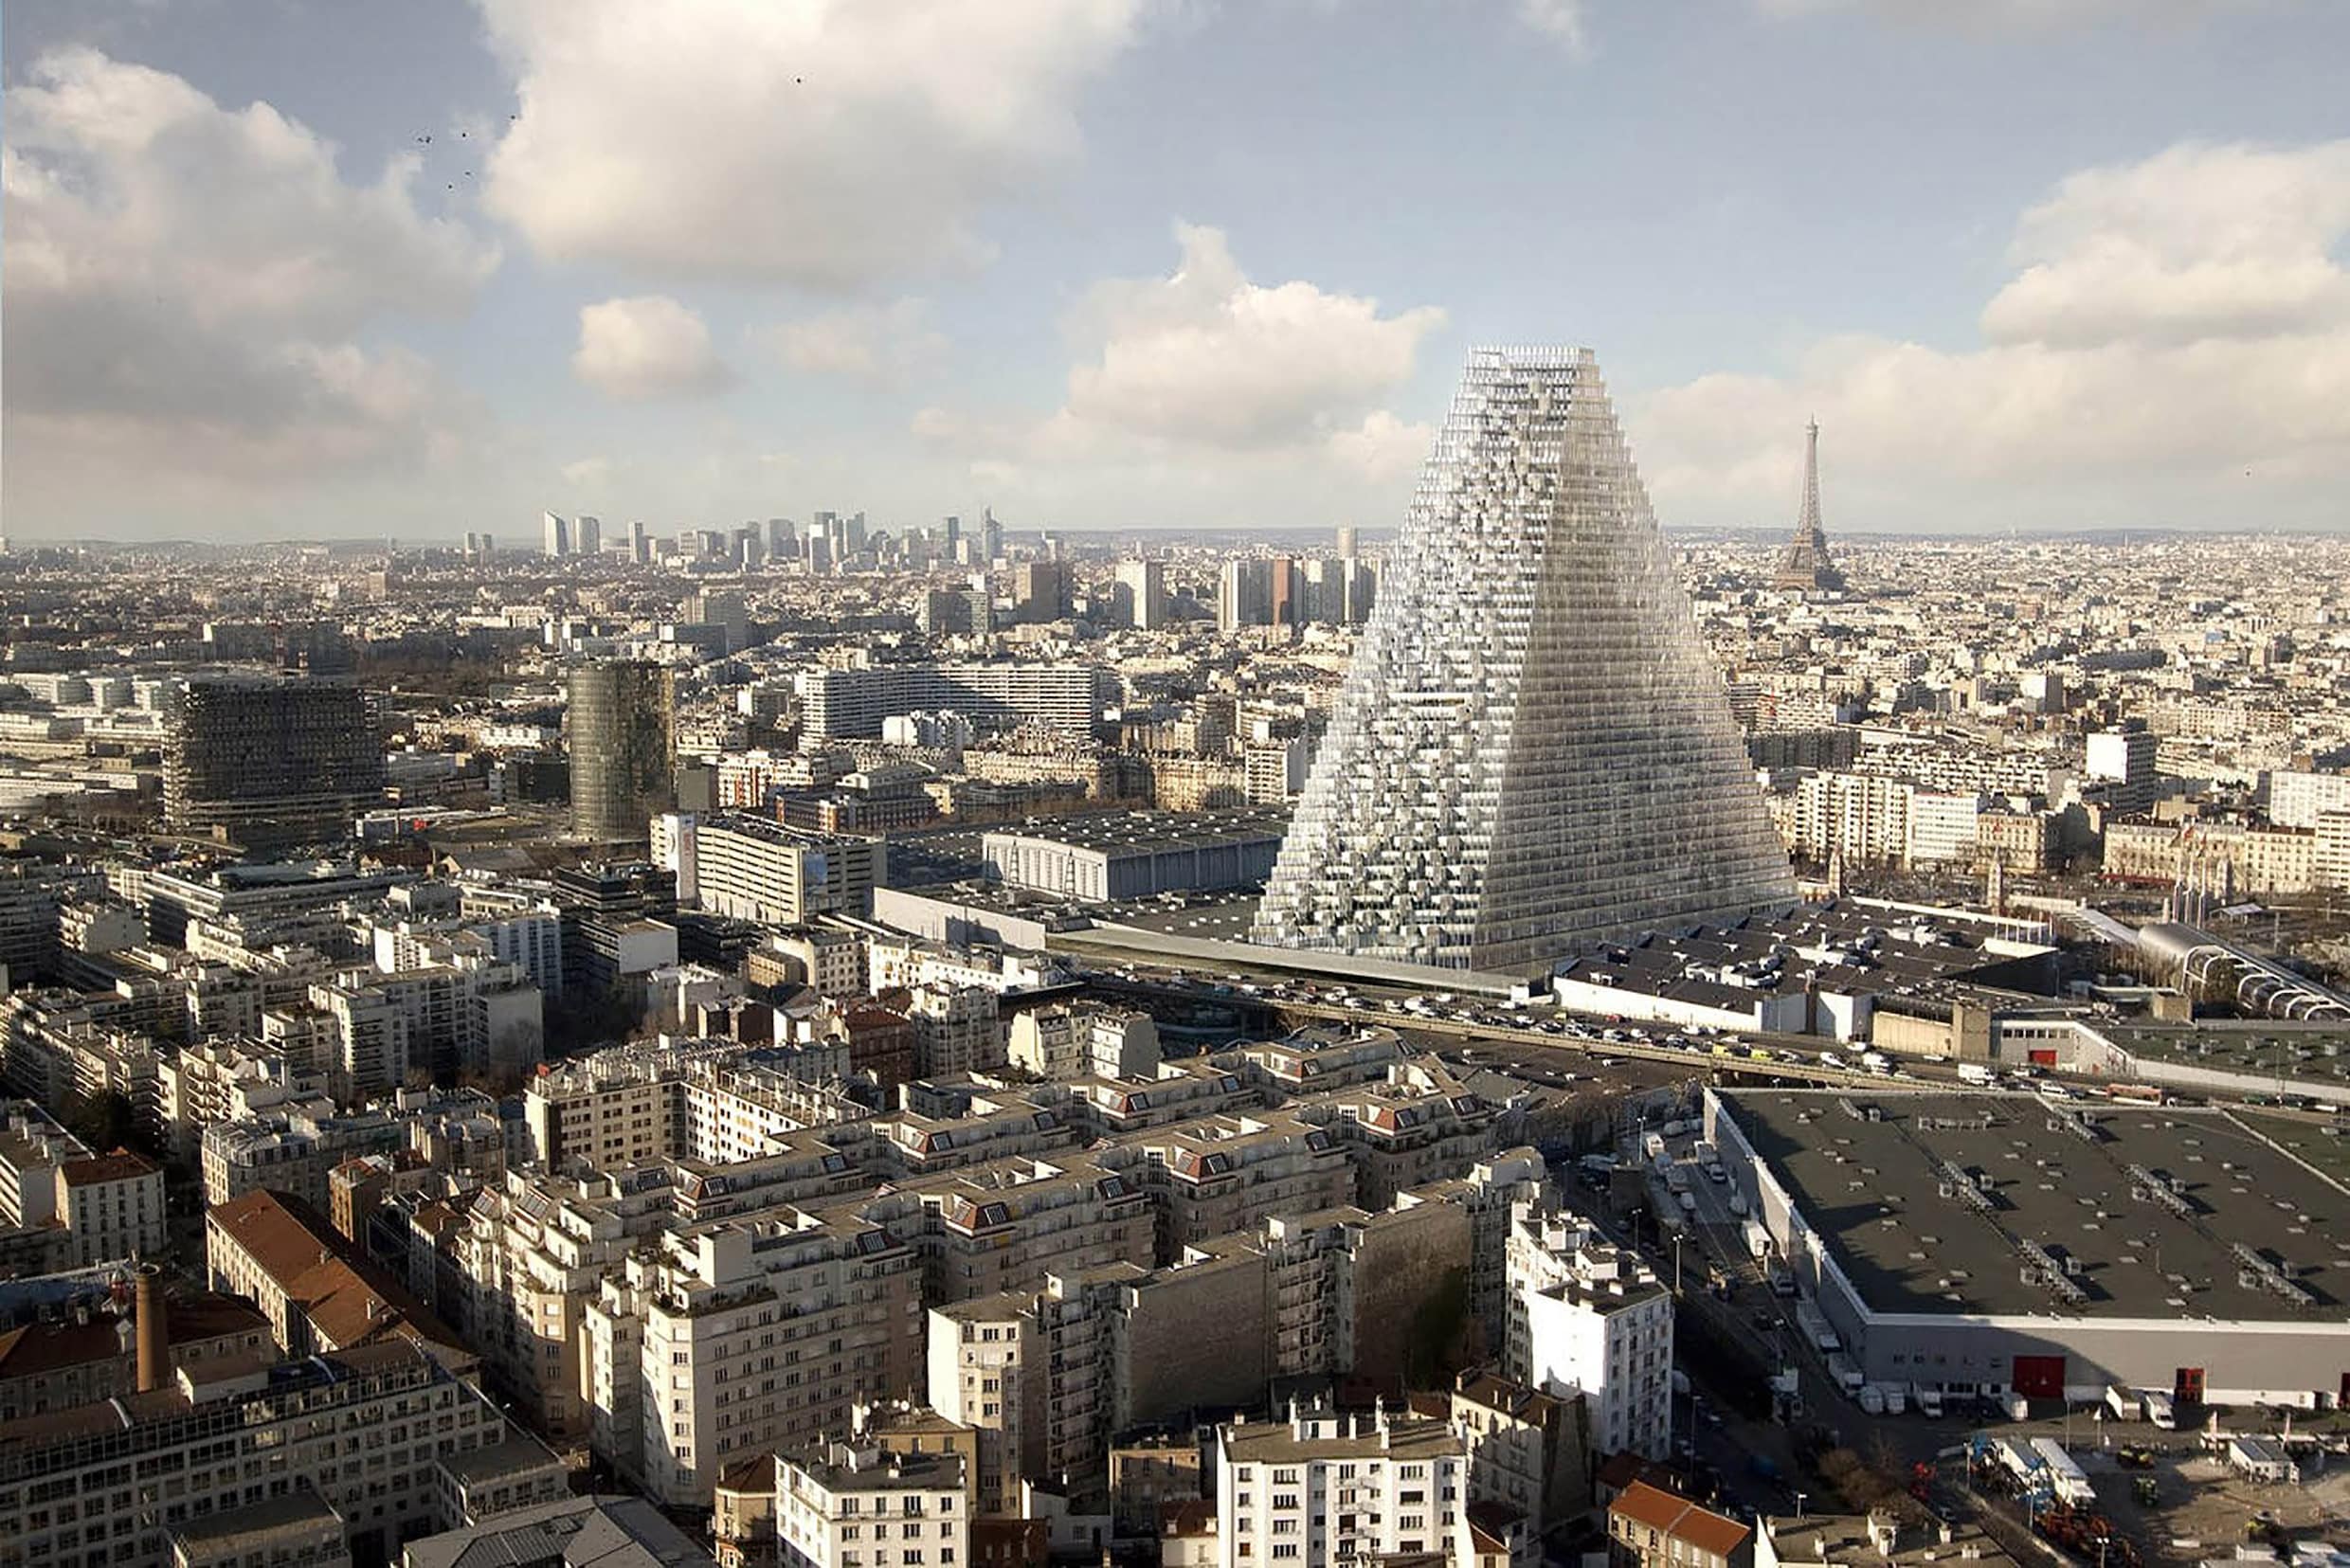 180 meter hoge ‘glazen Toblerone’ verhit de gemoederen in Parijs